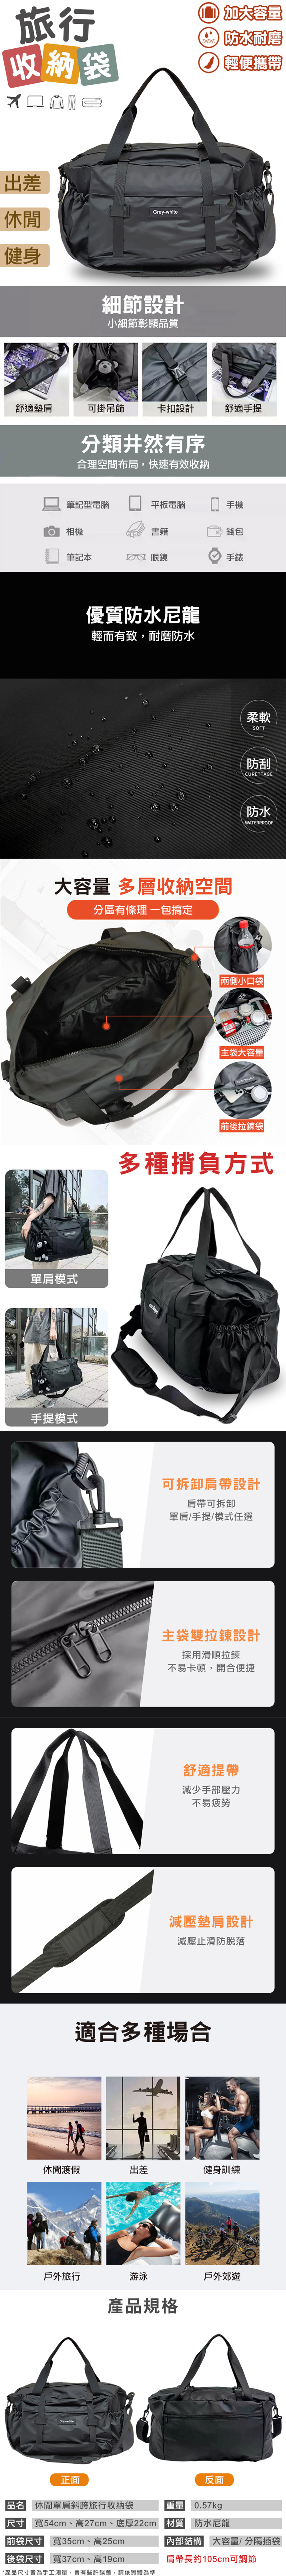 大容量防水耐磨多功能旅行袋 旅行包 斜背包 肩背包